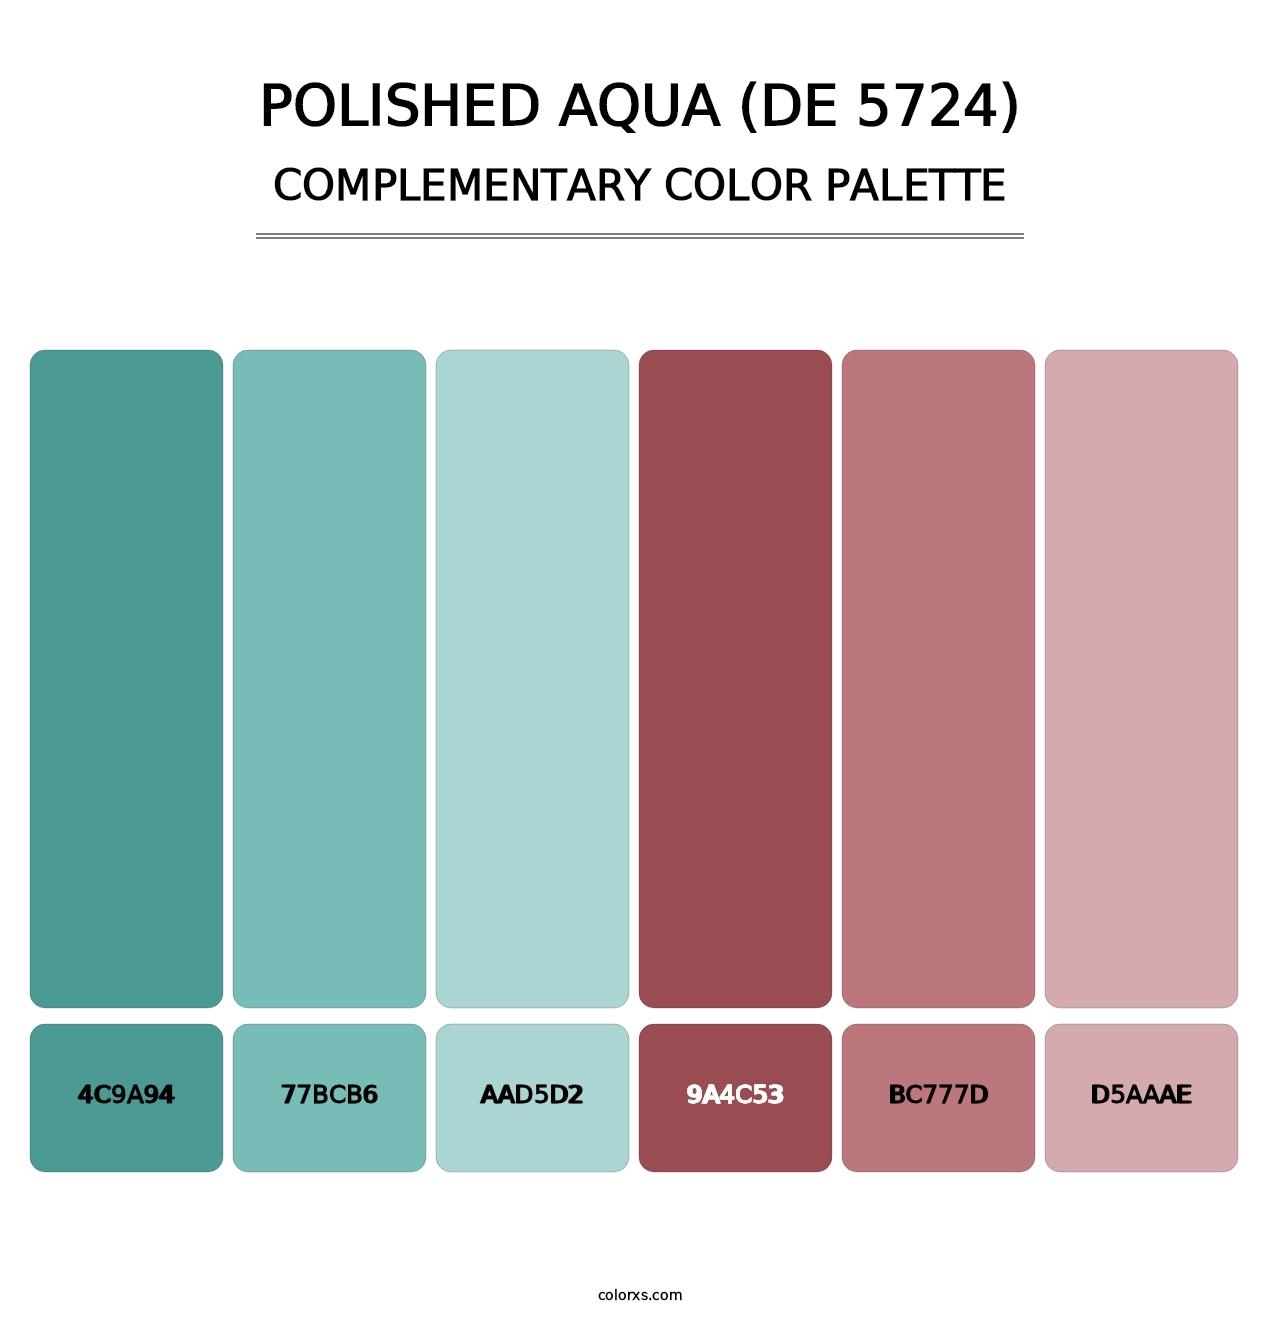 Polished Aqua (DE 5724) - Complementary Color Palette